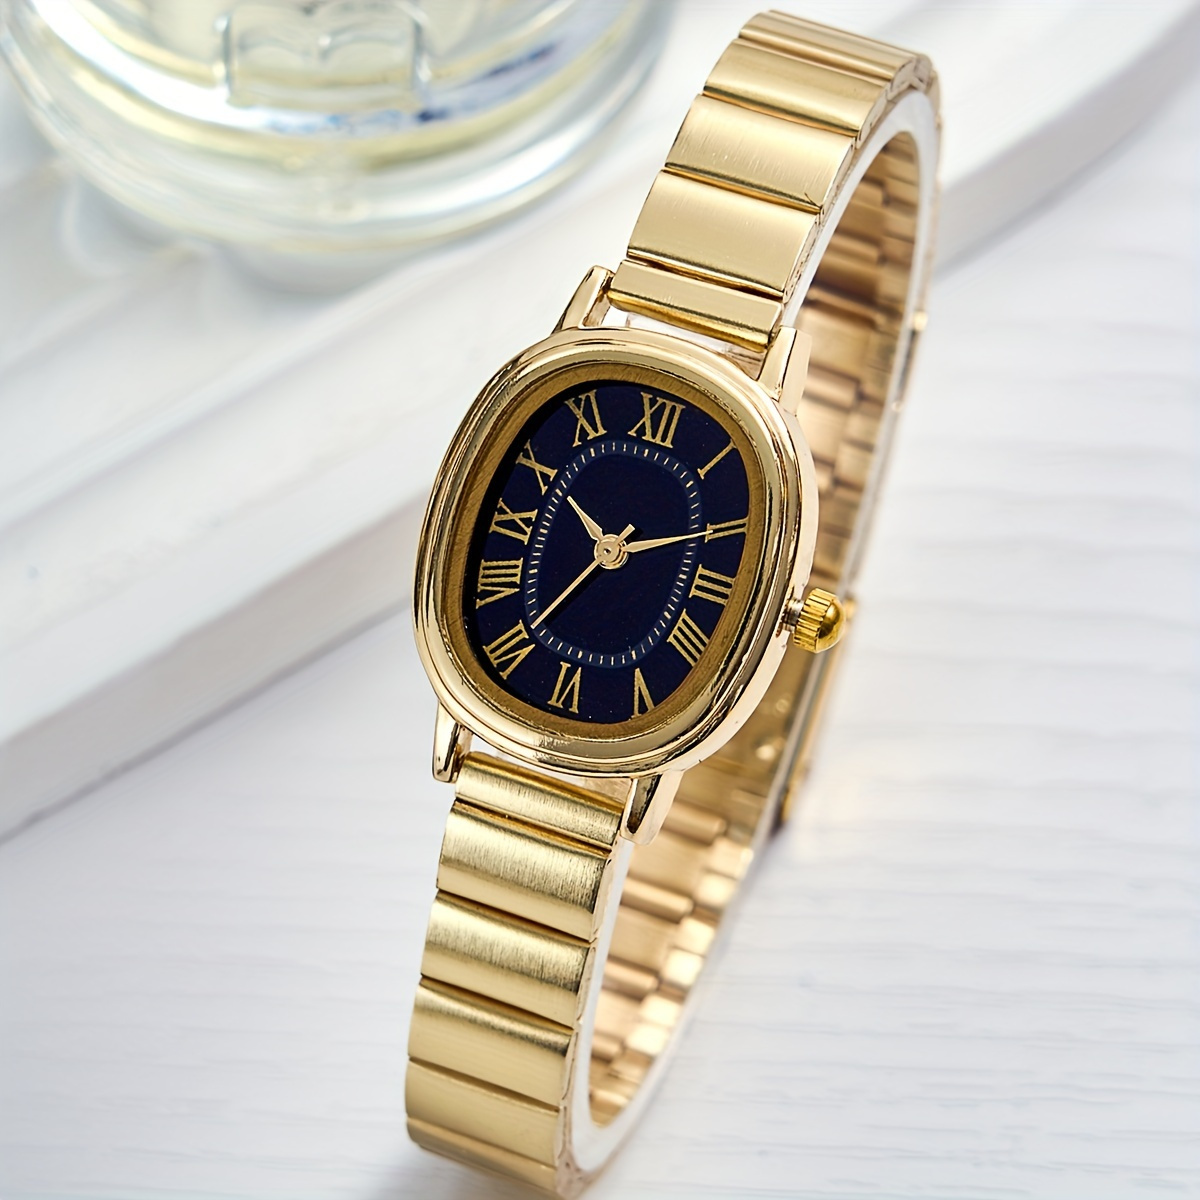 

Women's Luxury Golden Quartz Watch Vintage Rome Fashion Analog Stainless Steel Wrist Watch